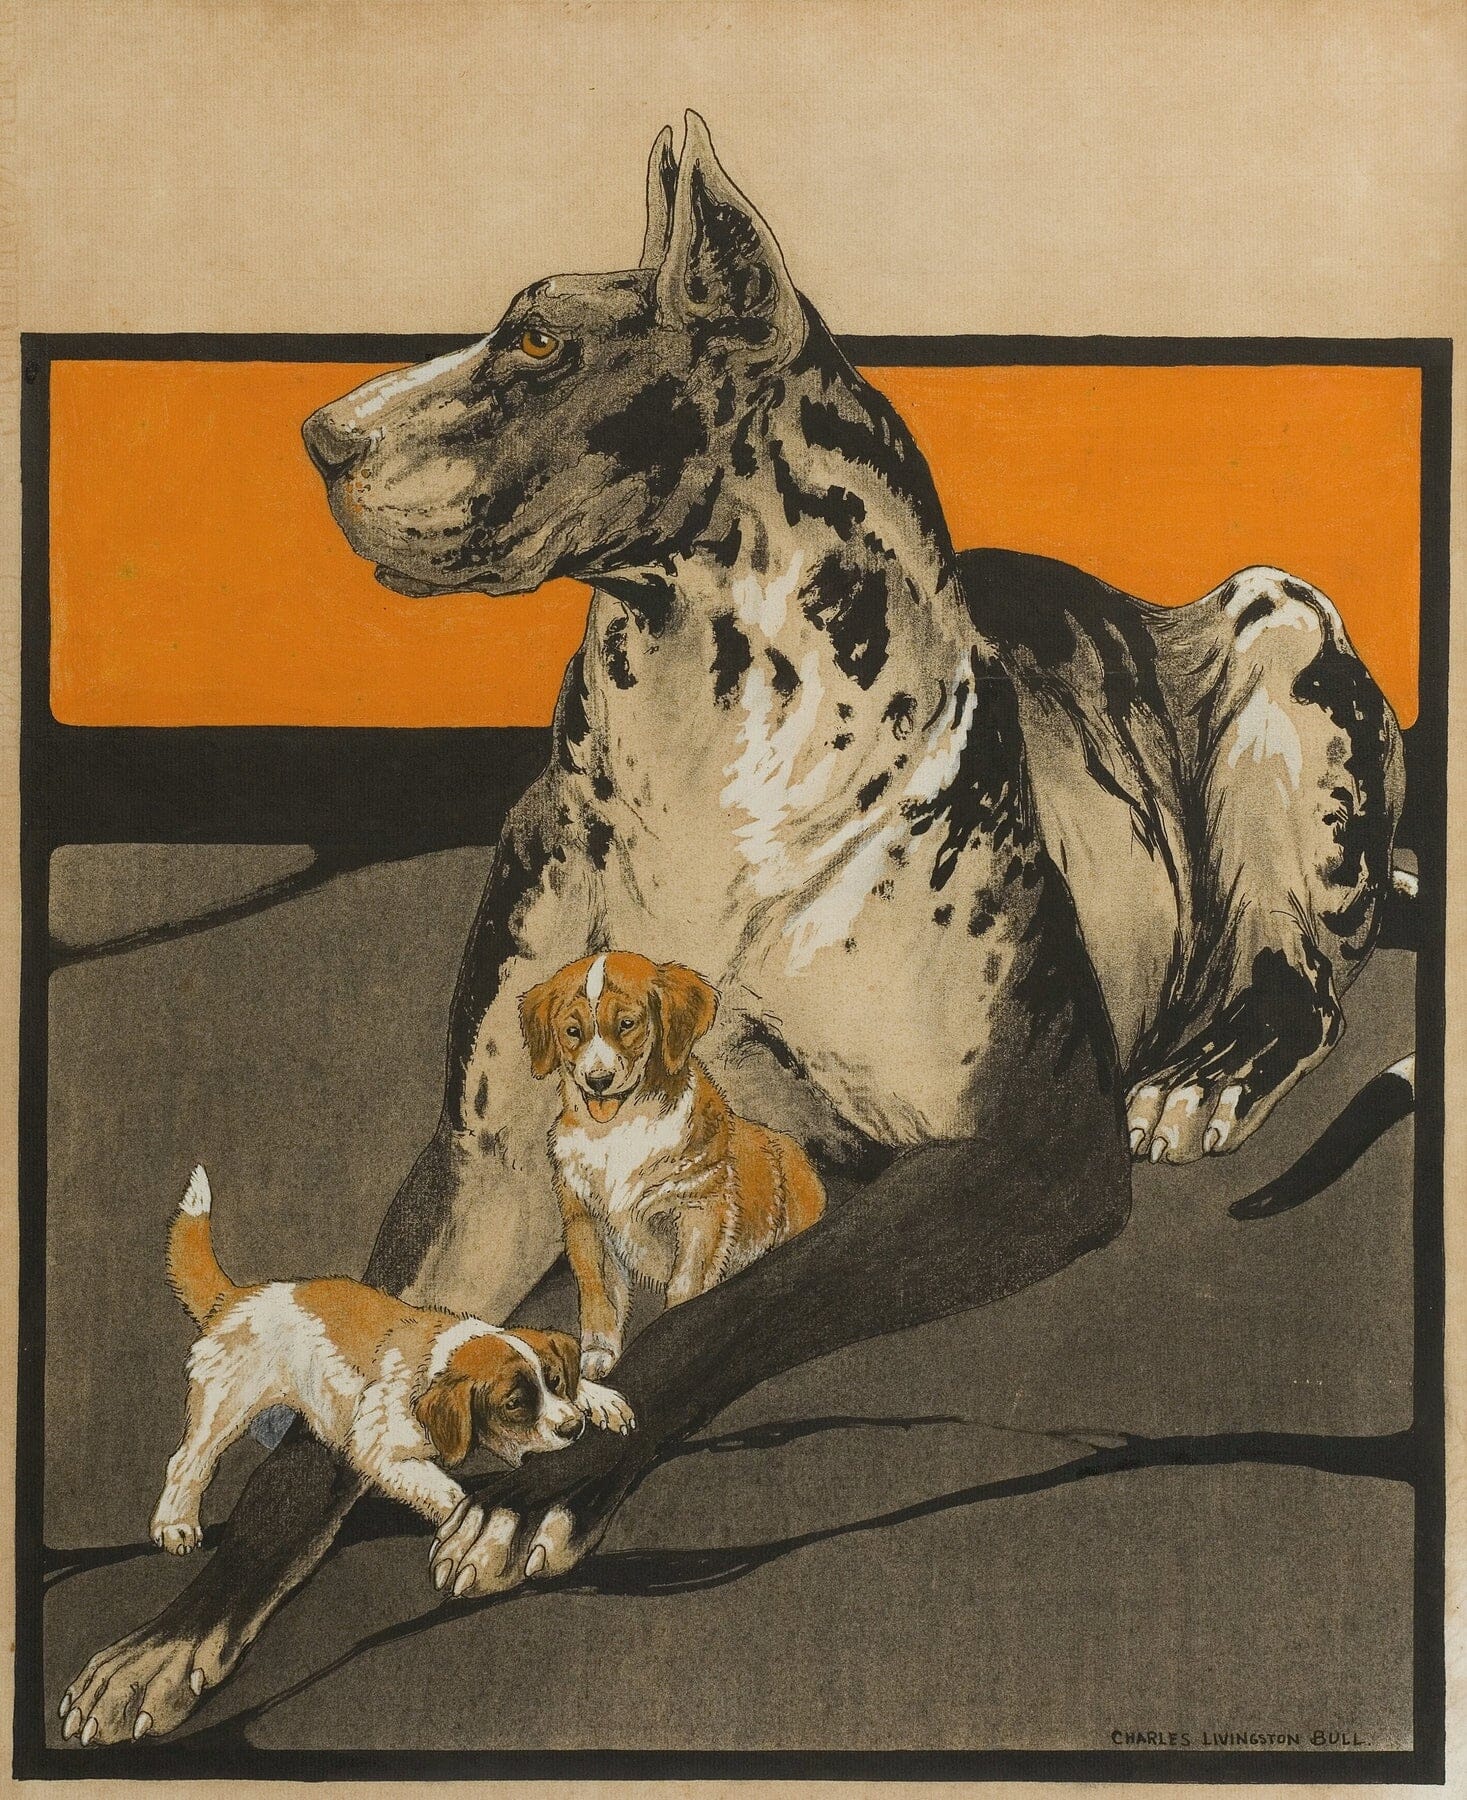 Great Dane artwork (1920s) |  Charles Livingston Bull Posters, Prints, & Visual Artwork The Trumpet Shop   